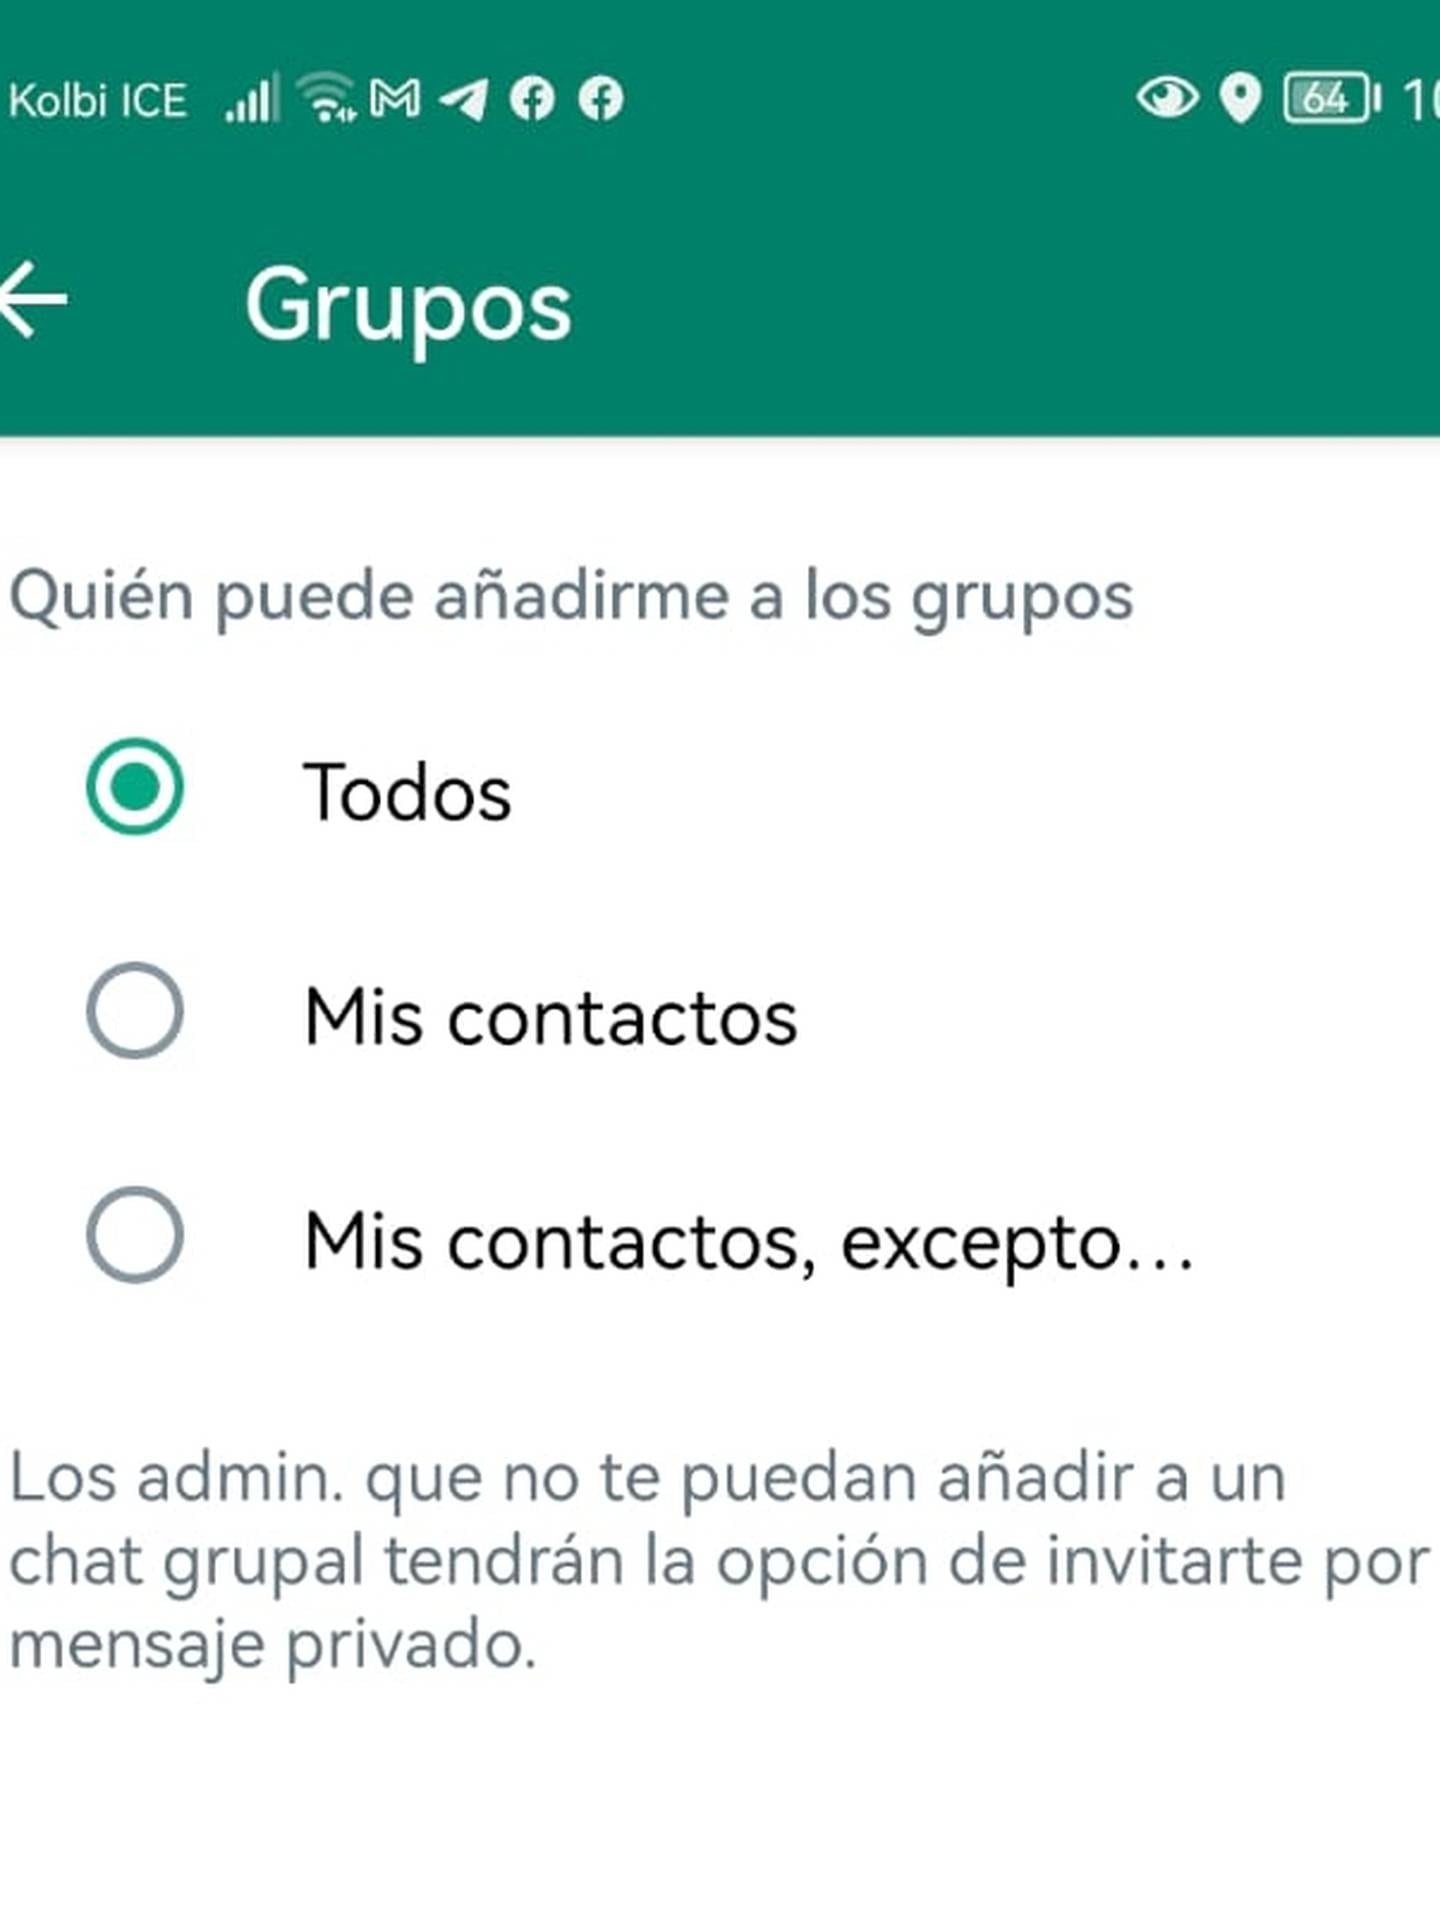 ¿Cómo evitar que lo agreguen a chats grupales de WhatsApp sin consentimiento?